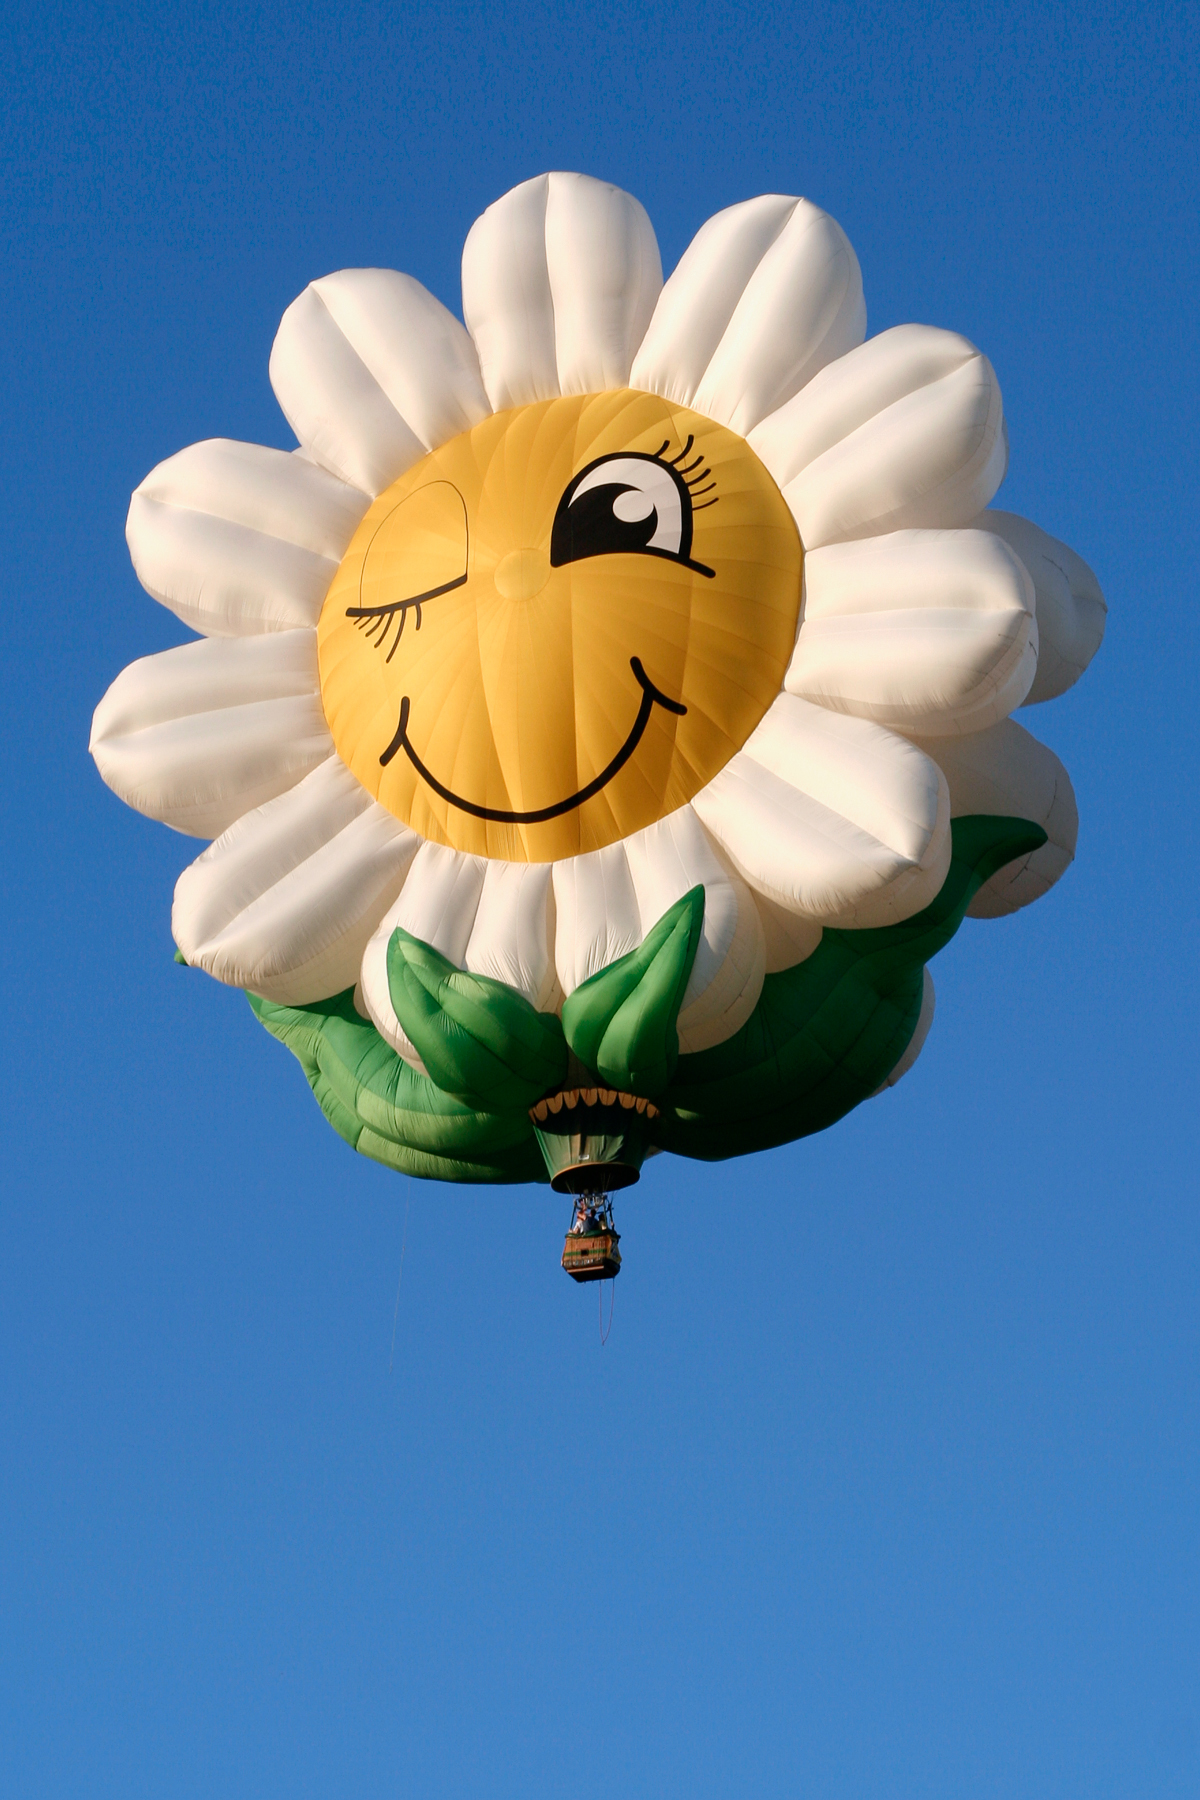 Smiling Daisy Air Balloon, Air, Soar, Photo, Photograph, HQ Photo